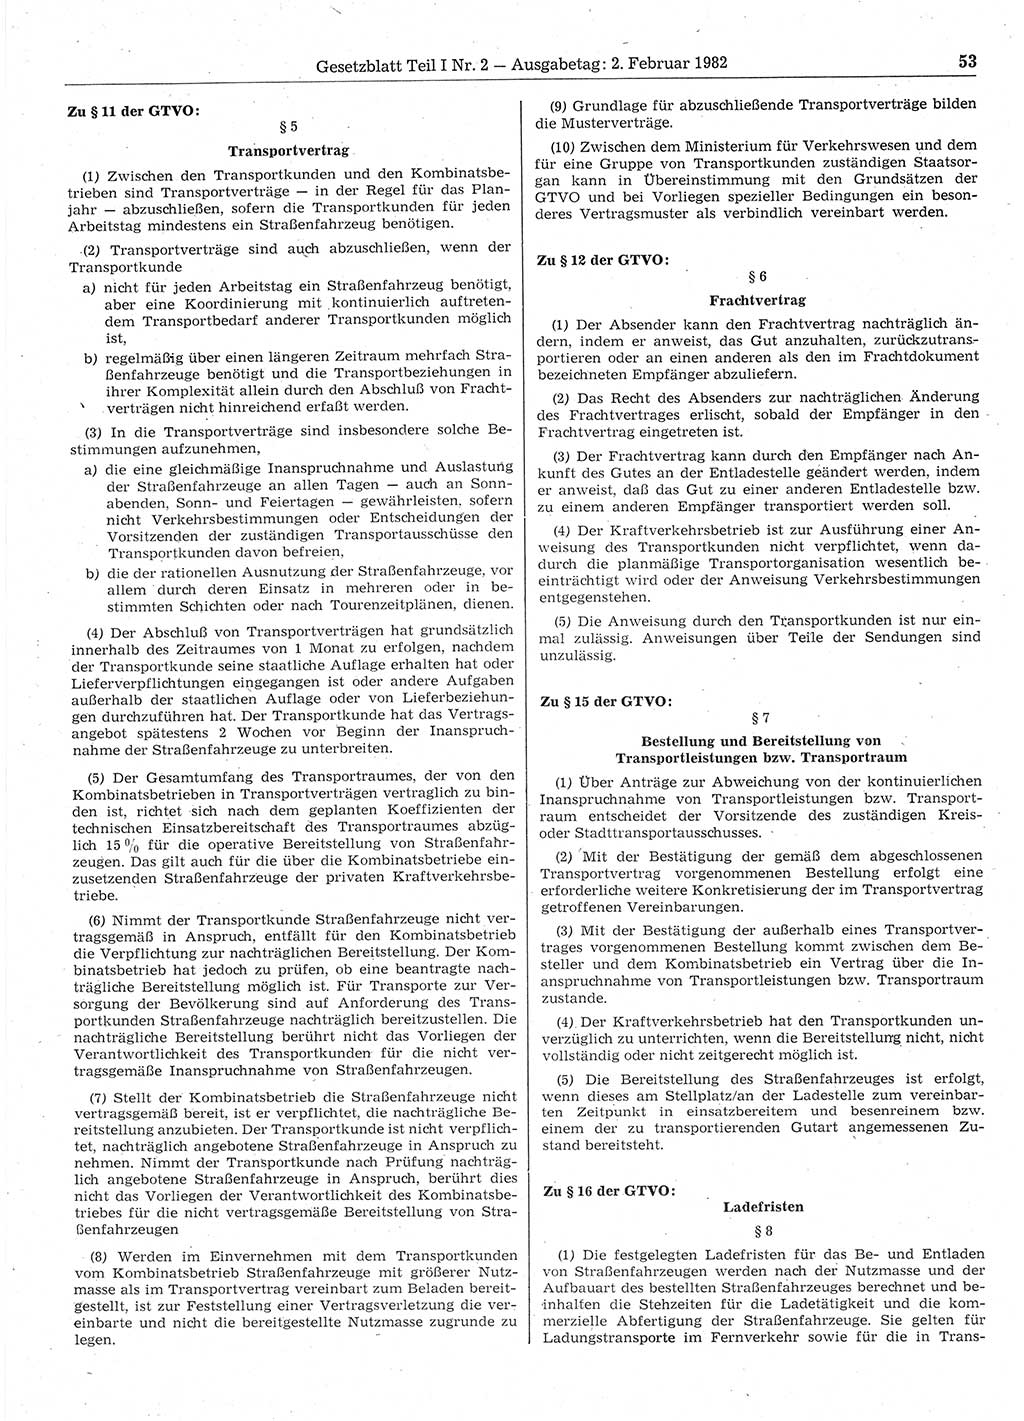 Gesetzblatt (GBl.) der Deutschen Demokratischen Republik (DDR) Teil Ⅰ 1982, Seite 53 (GBl. DDR Ⅰ 1982, S. 53)